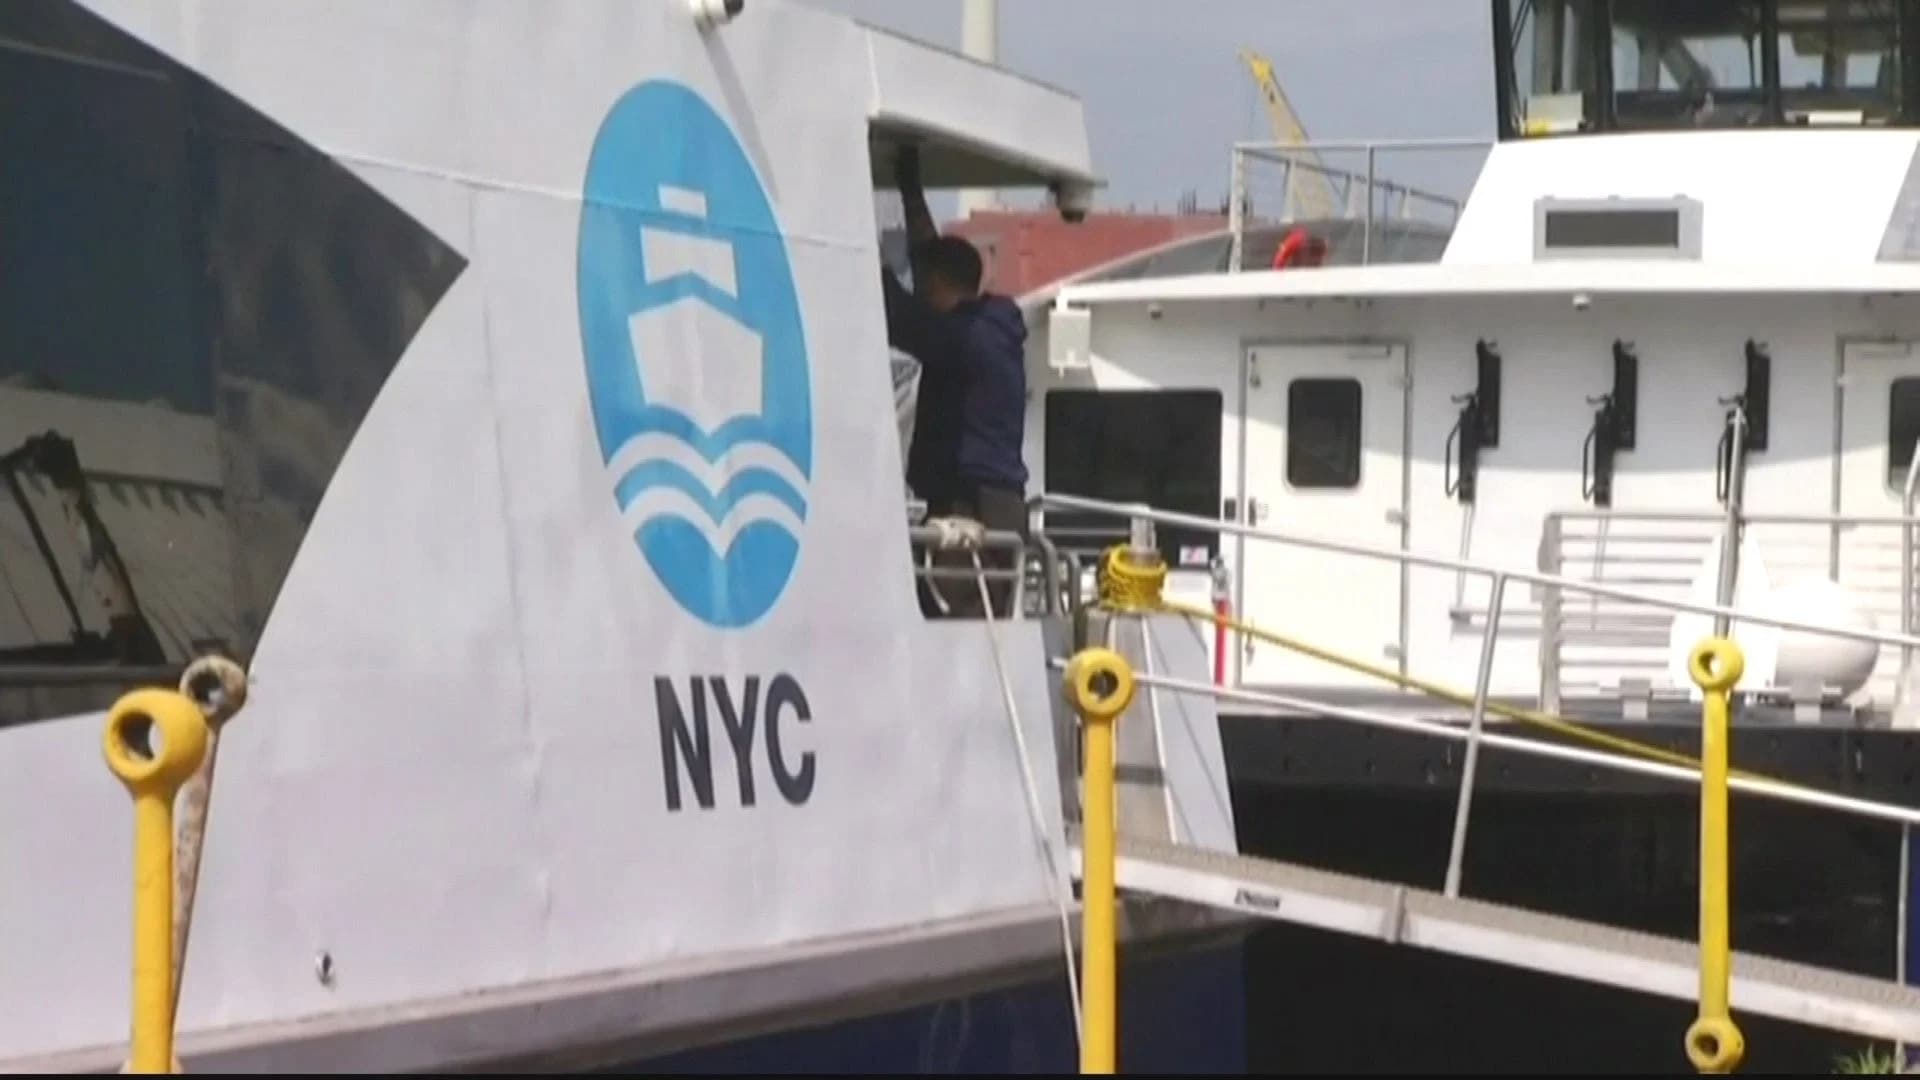 Get a sneak peek inside NYC’s new citywide ferry system